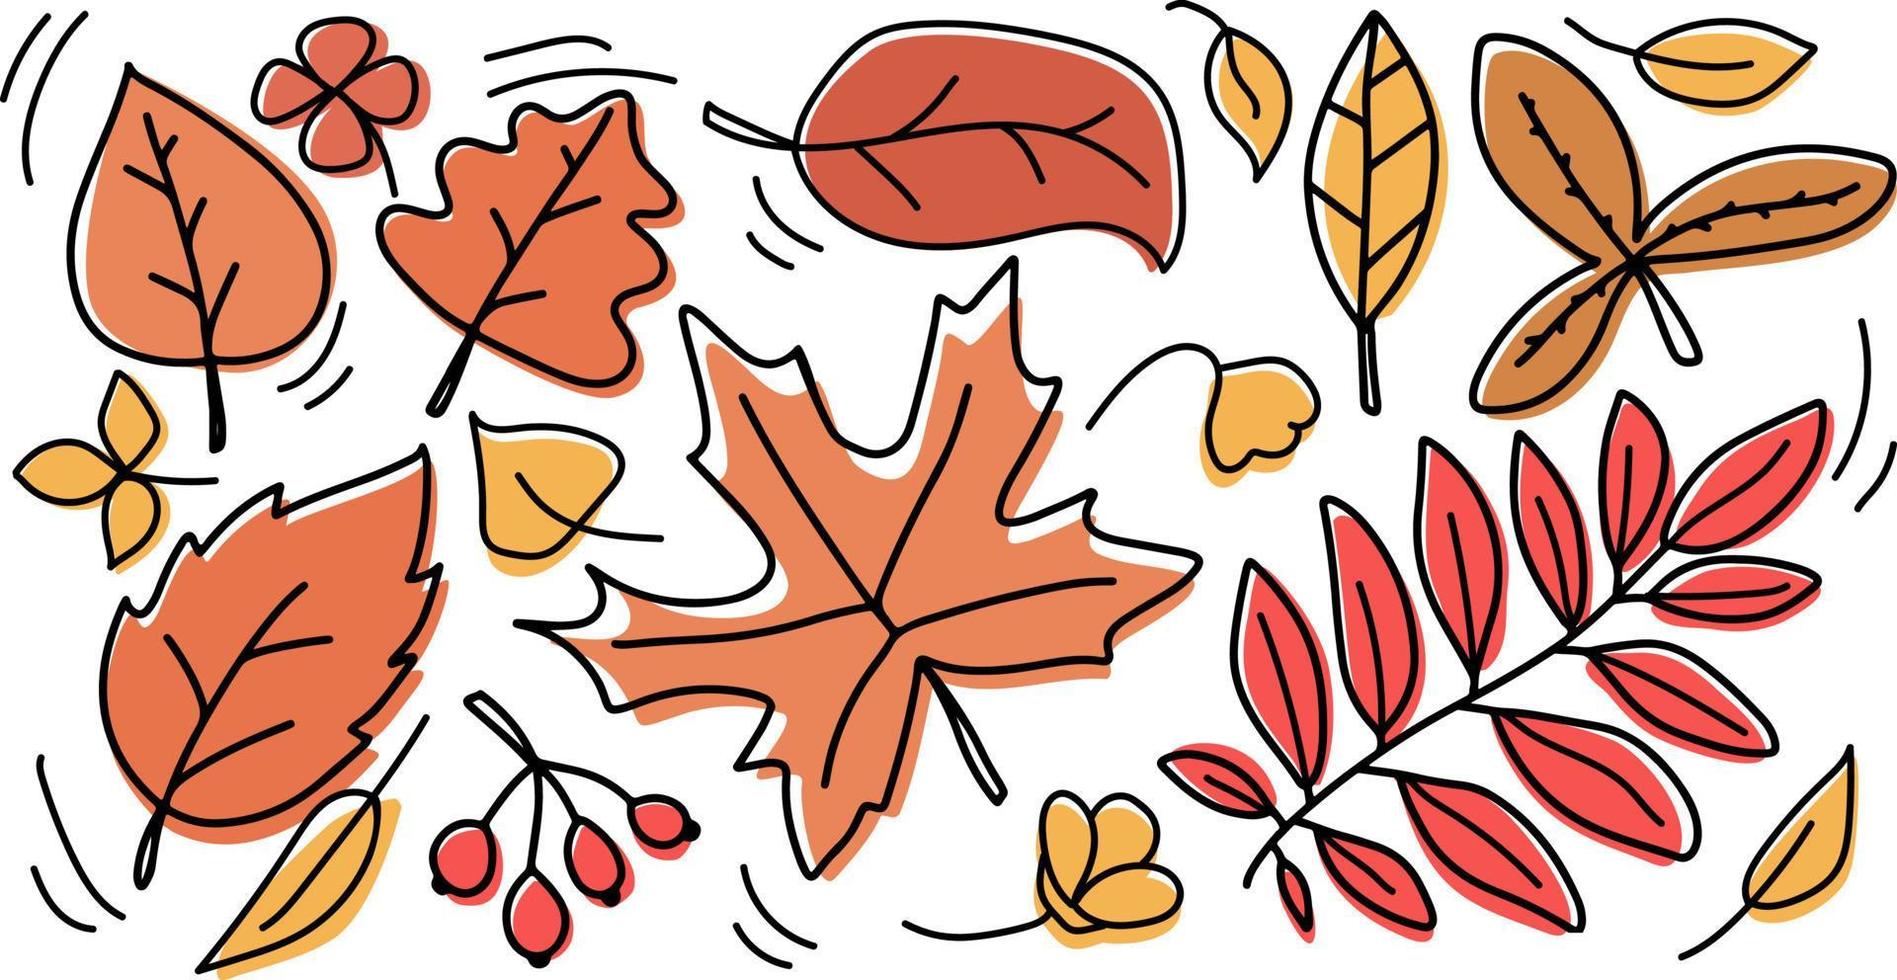 höst gul och orange löv uppsättning. isolerat på vit bakgrund vektor illustration. träd lövverk element för säsong- hälsning kort mönster.